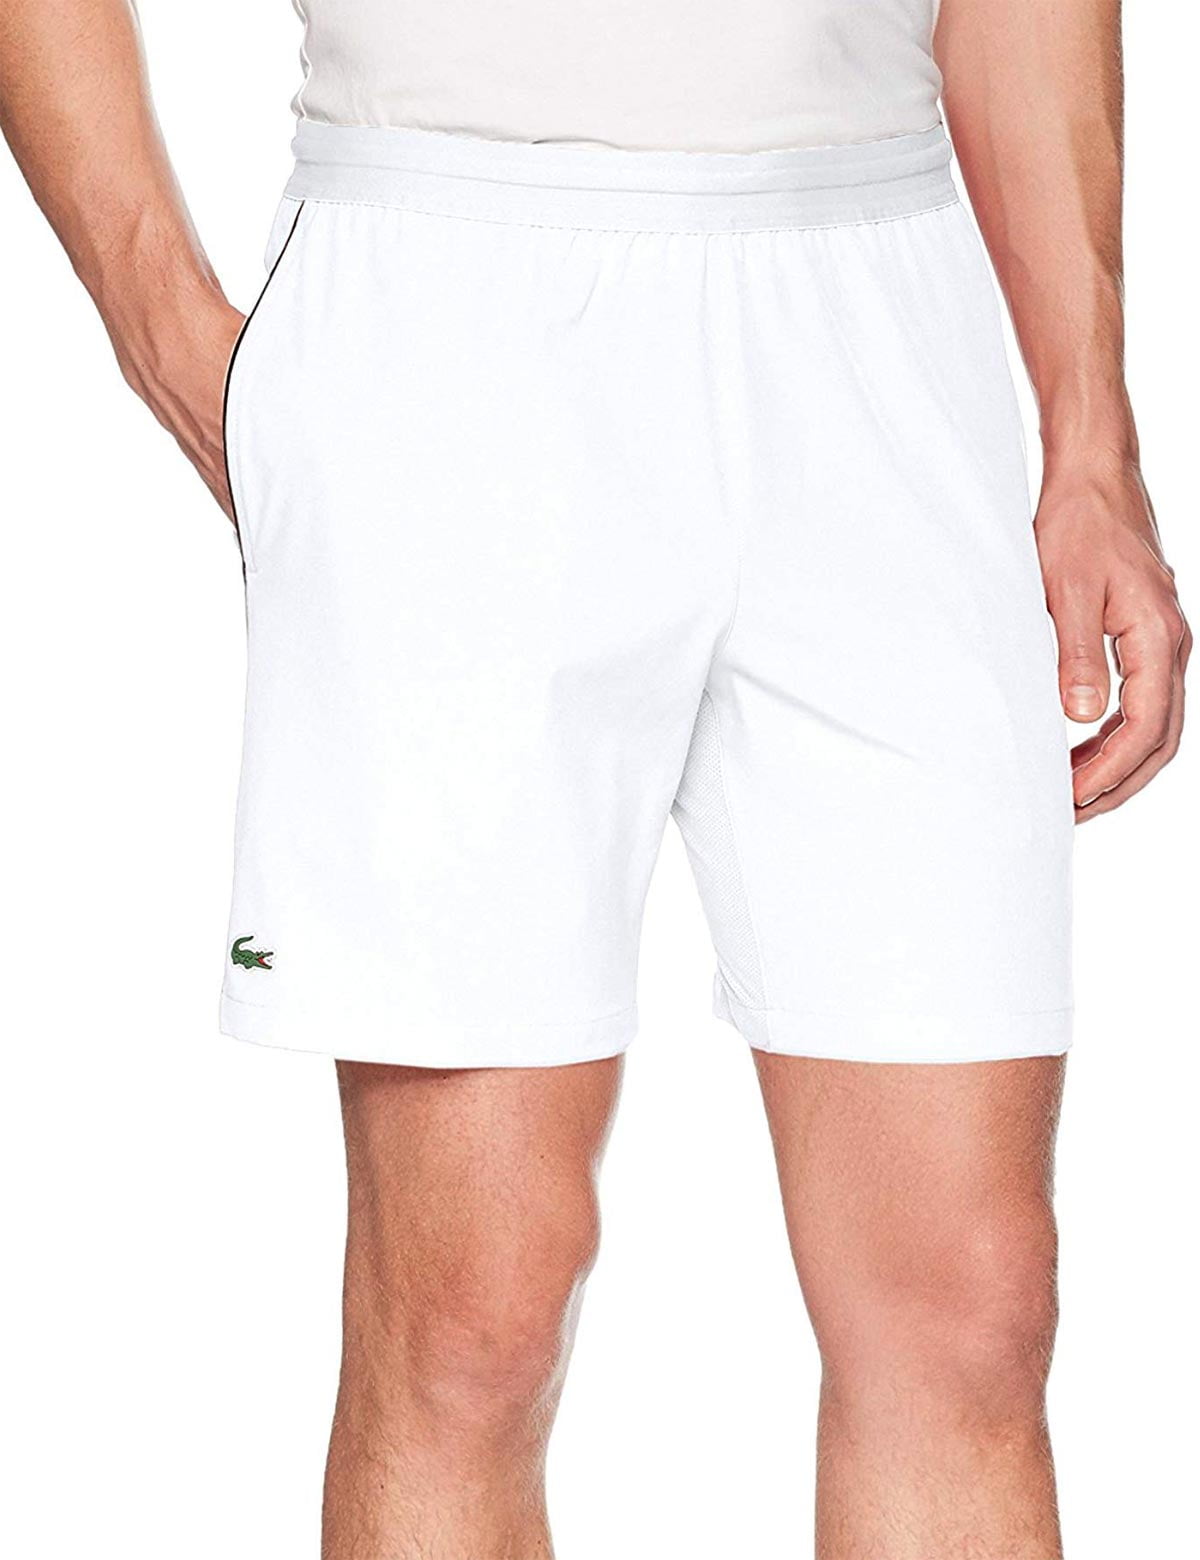 lacoste shorts white